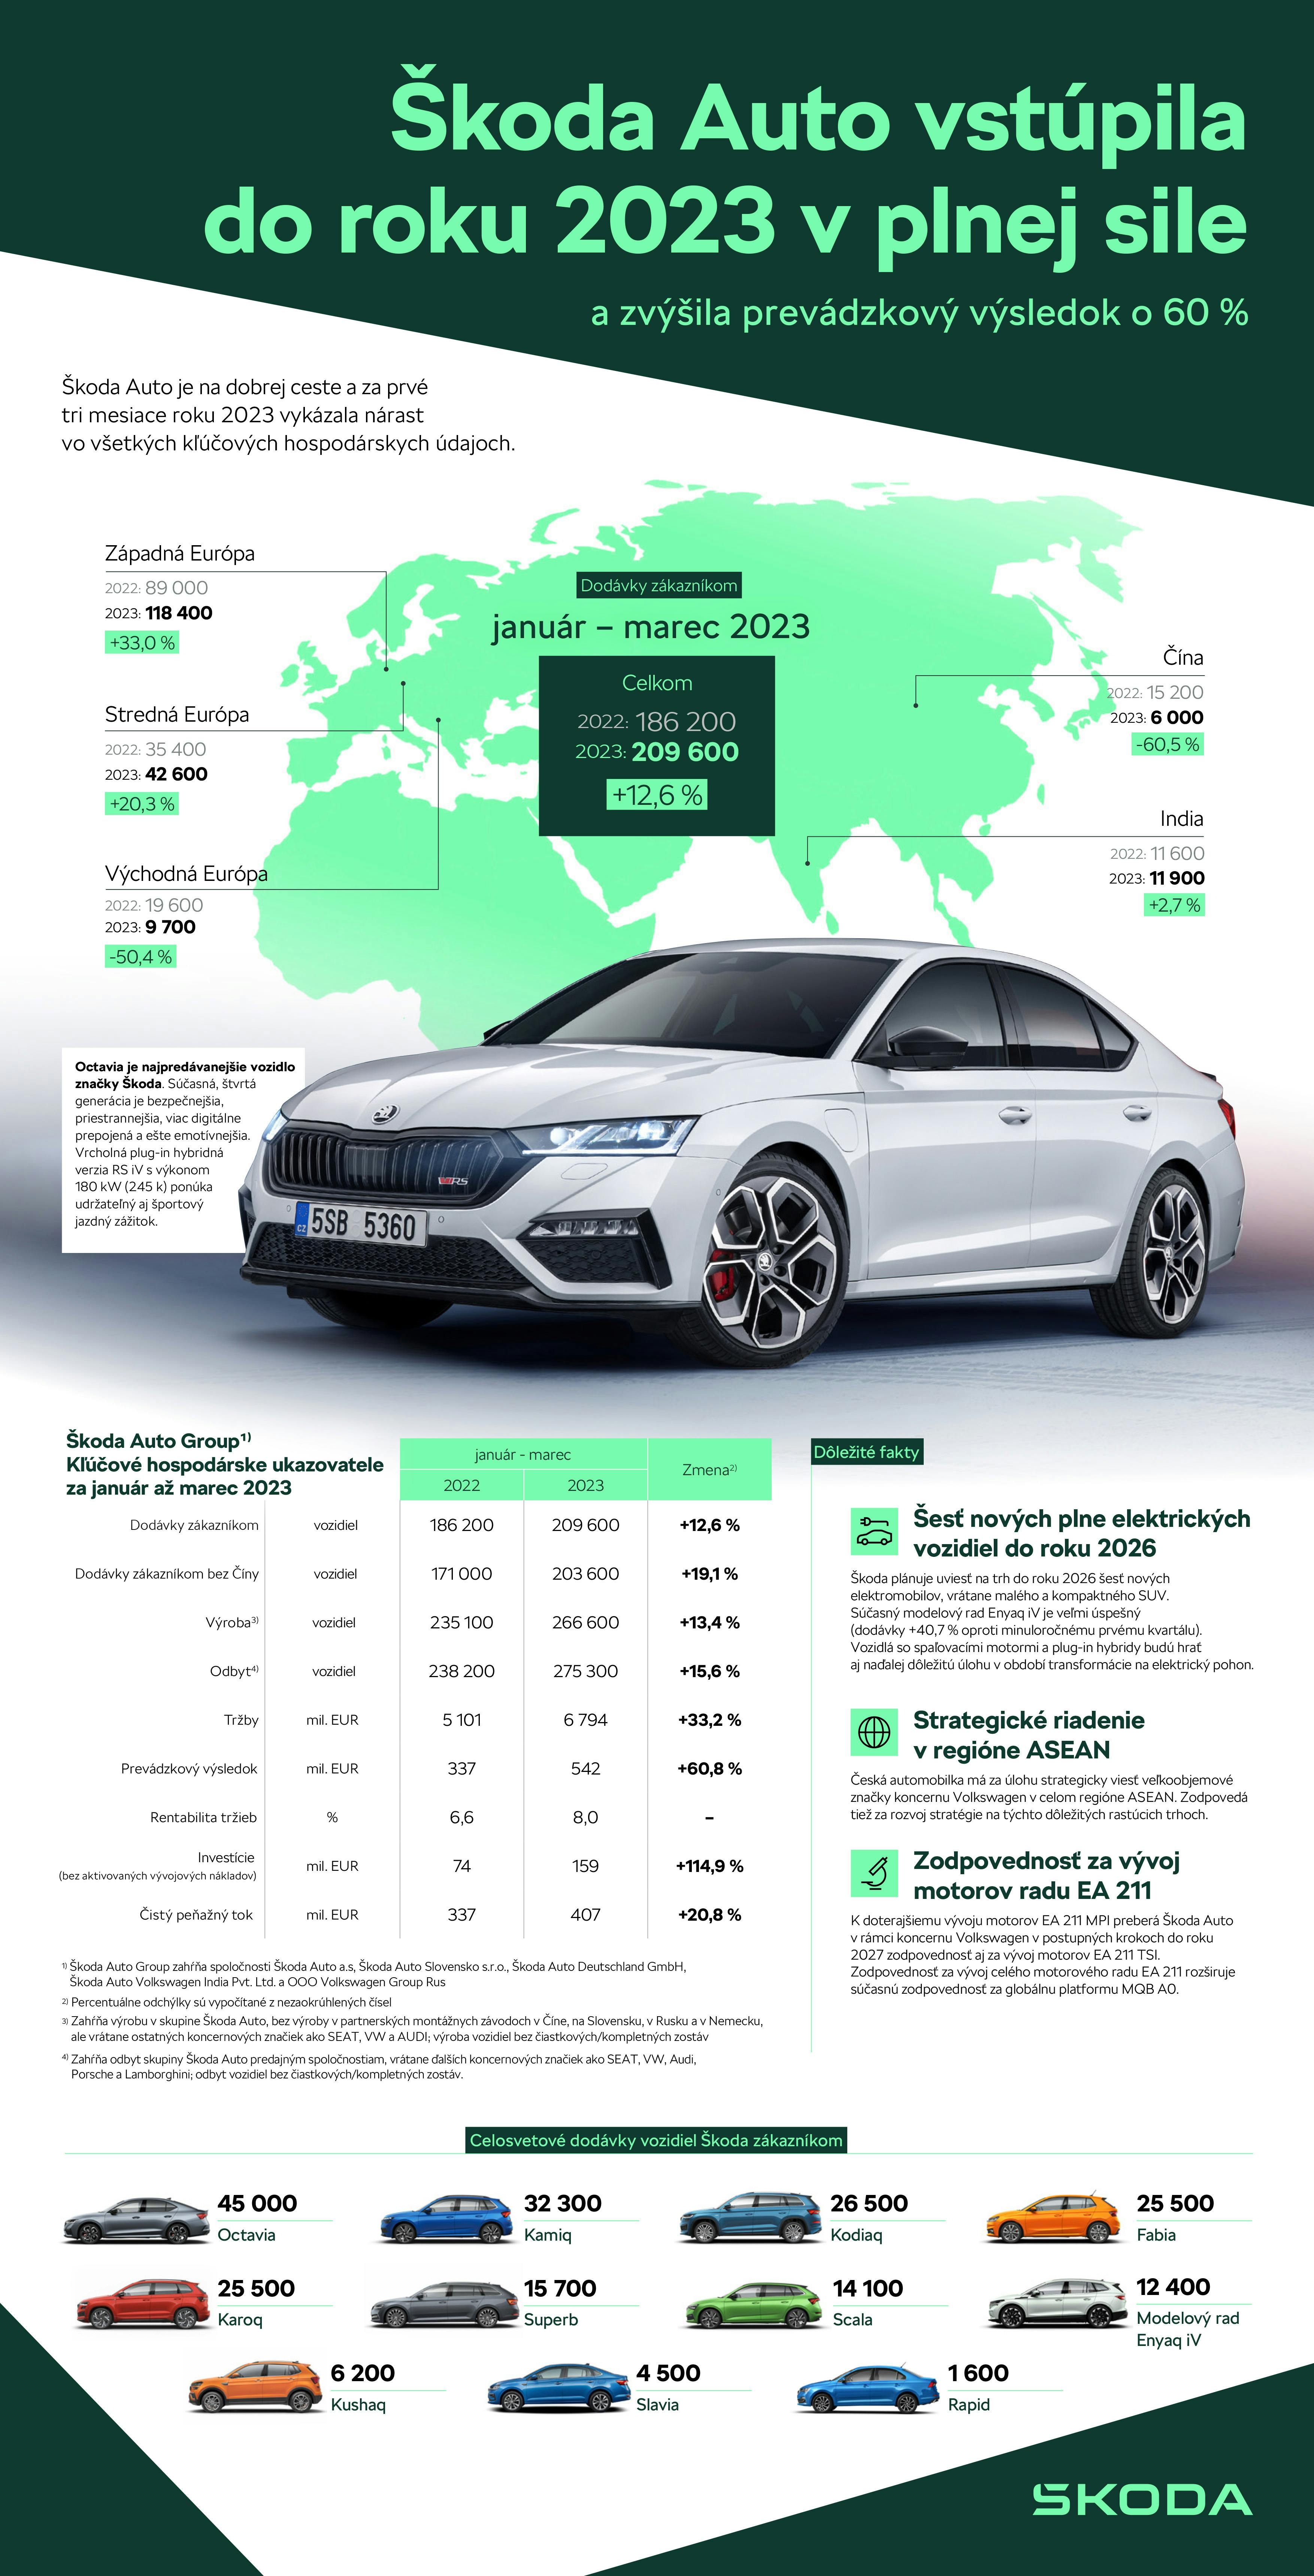 Škoda Auto Group sa po troch náročných rokoch vracia na úspešnú cestu. Česká automobilka dodala zákazníkom 209 600 vozidiel (+12,6 % oproti prvému kvartálu minulého roku) a dosiahla prevádzkový zisk 542 miliónov eur (+60,8 %).